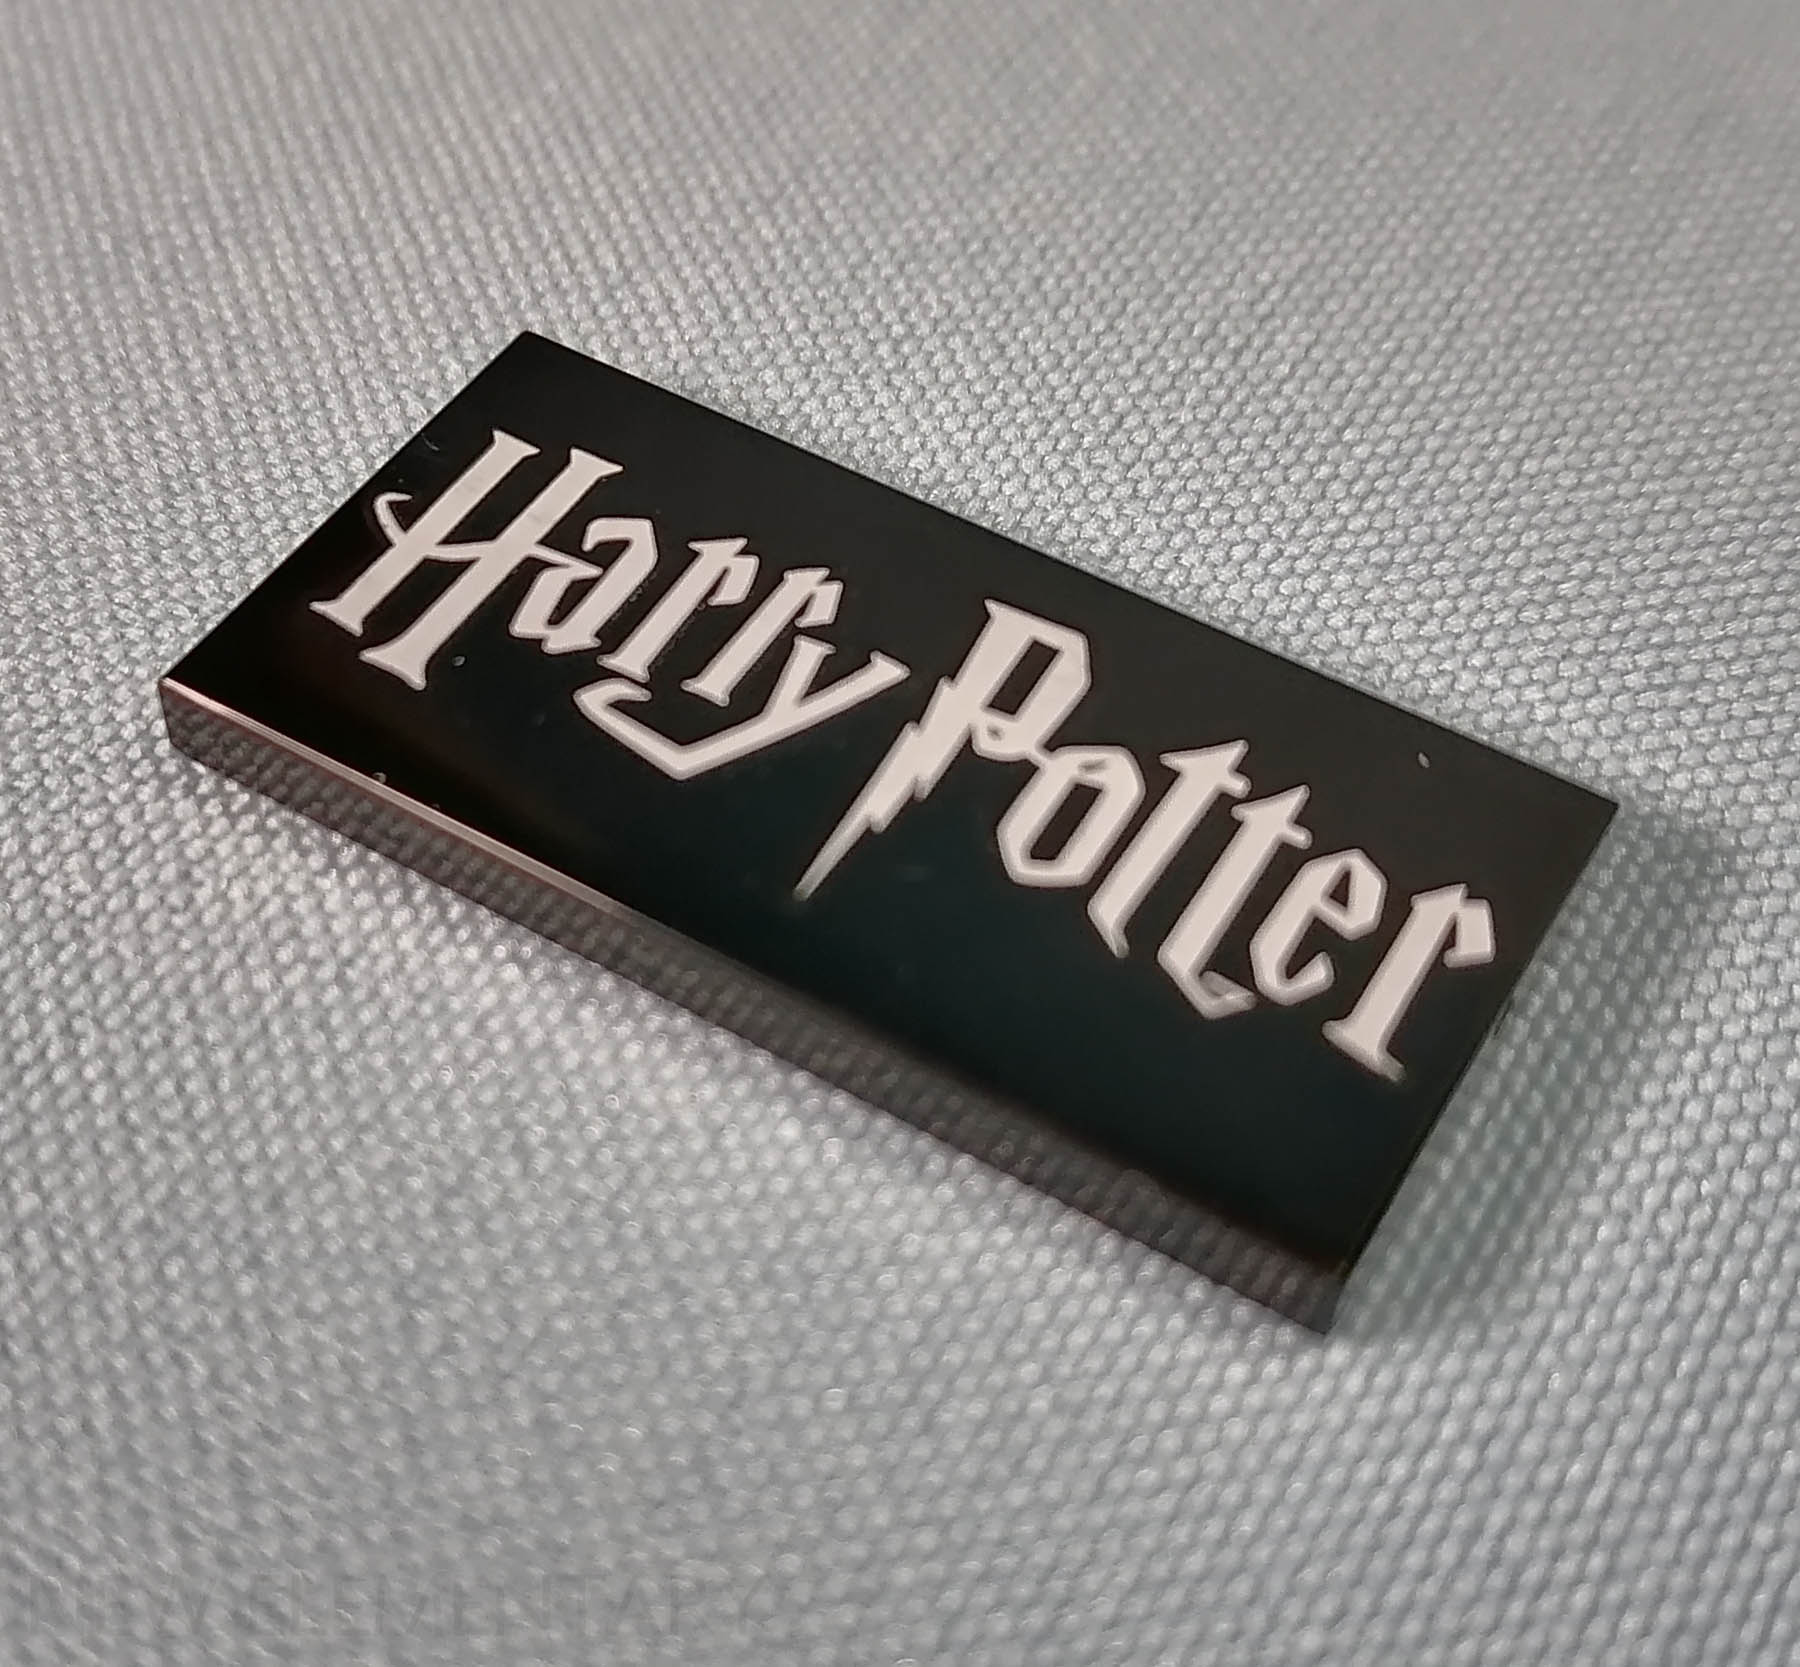 Harry Potter™ Hogwarts™ Crests 31201, Harry Potter™